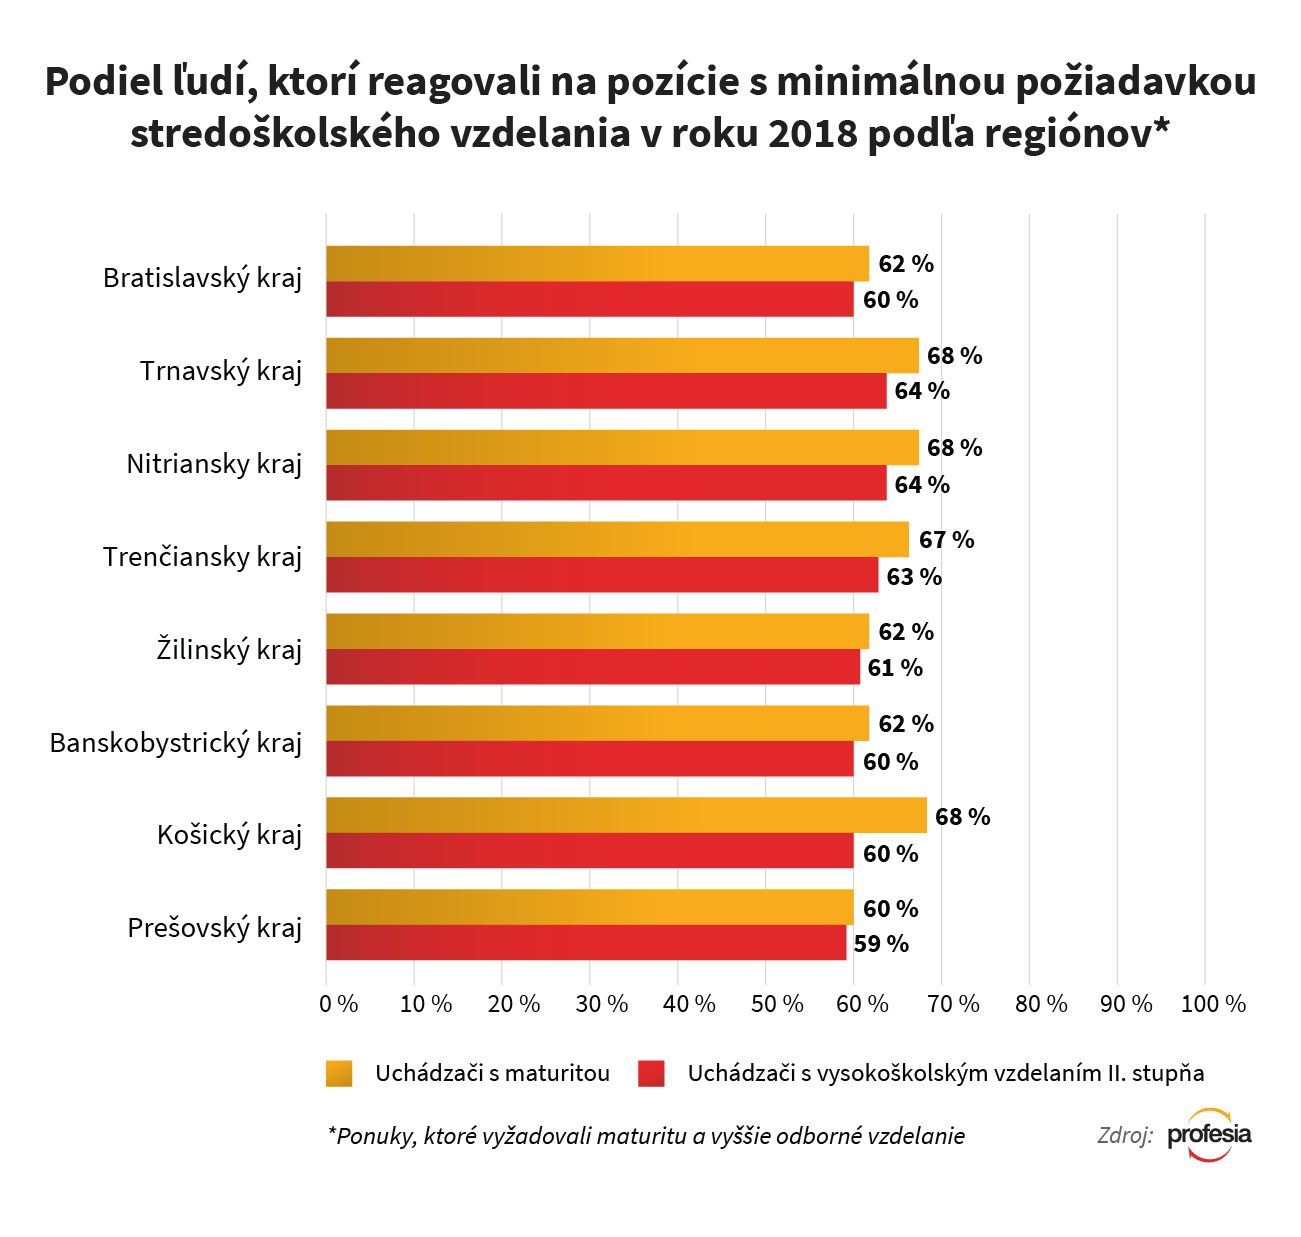 Profesia.sk - Reakcie na pracovné ponuky s požiadavkou SŠ vzdelania podľa regiónu 2018